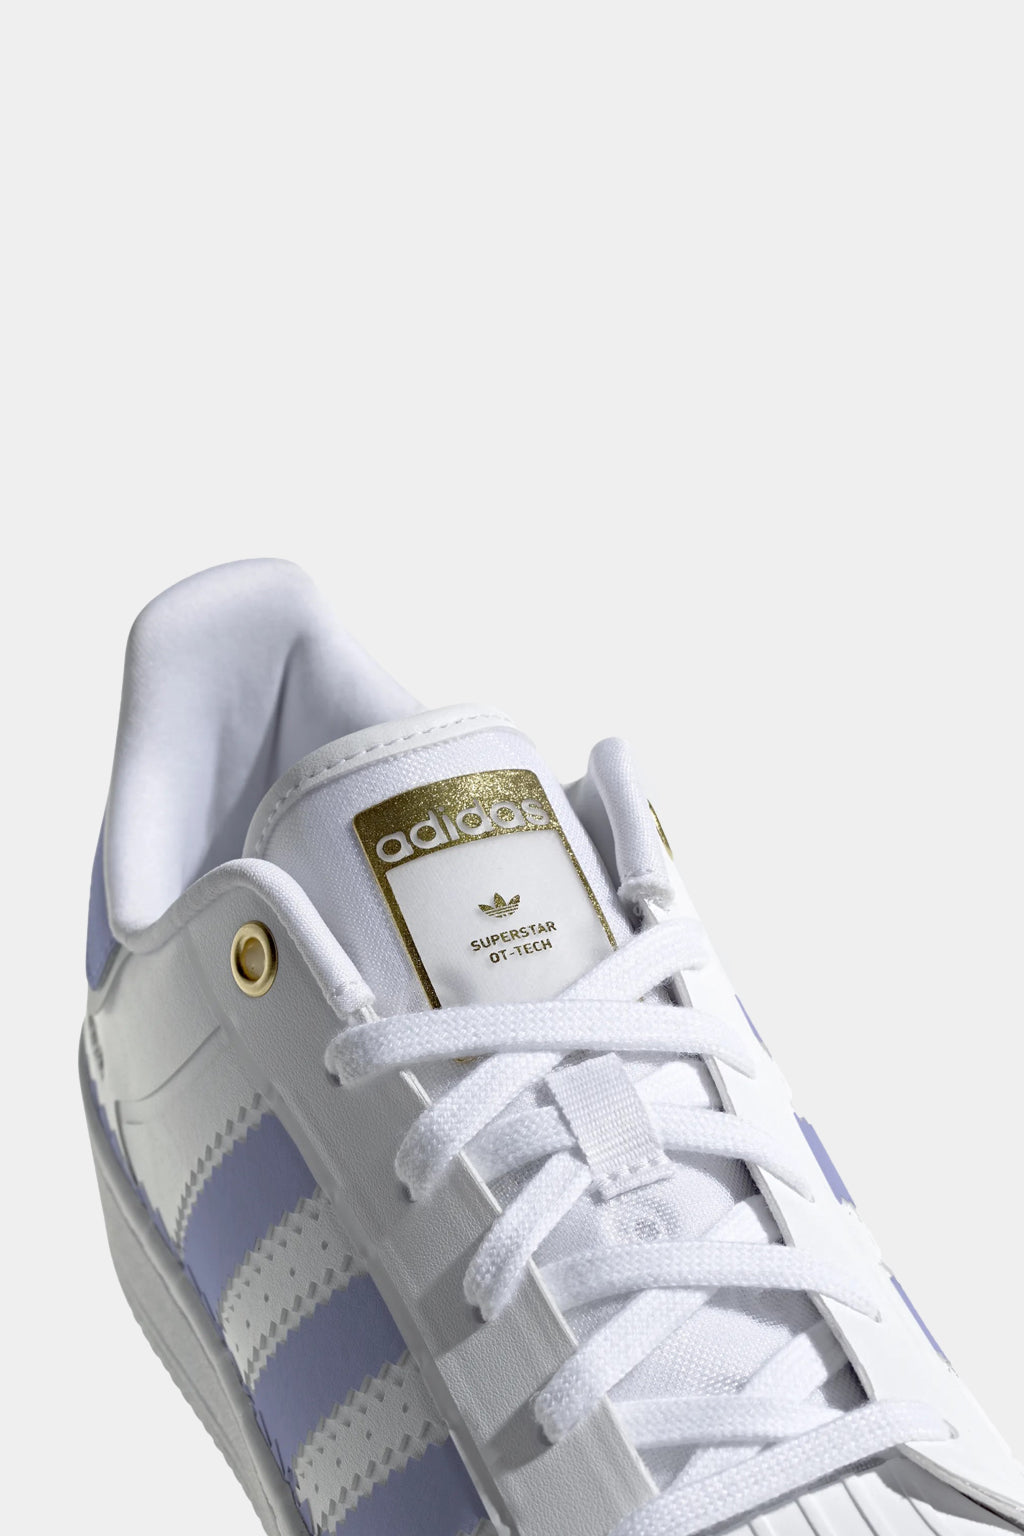 Adidas Originals - Superstar Ot Tech Shoes